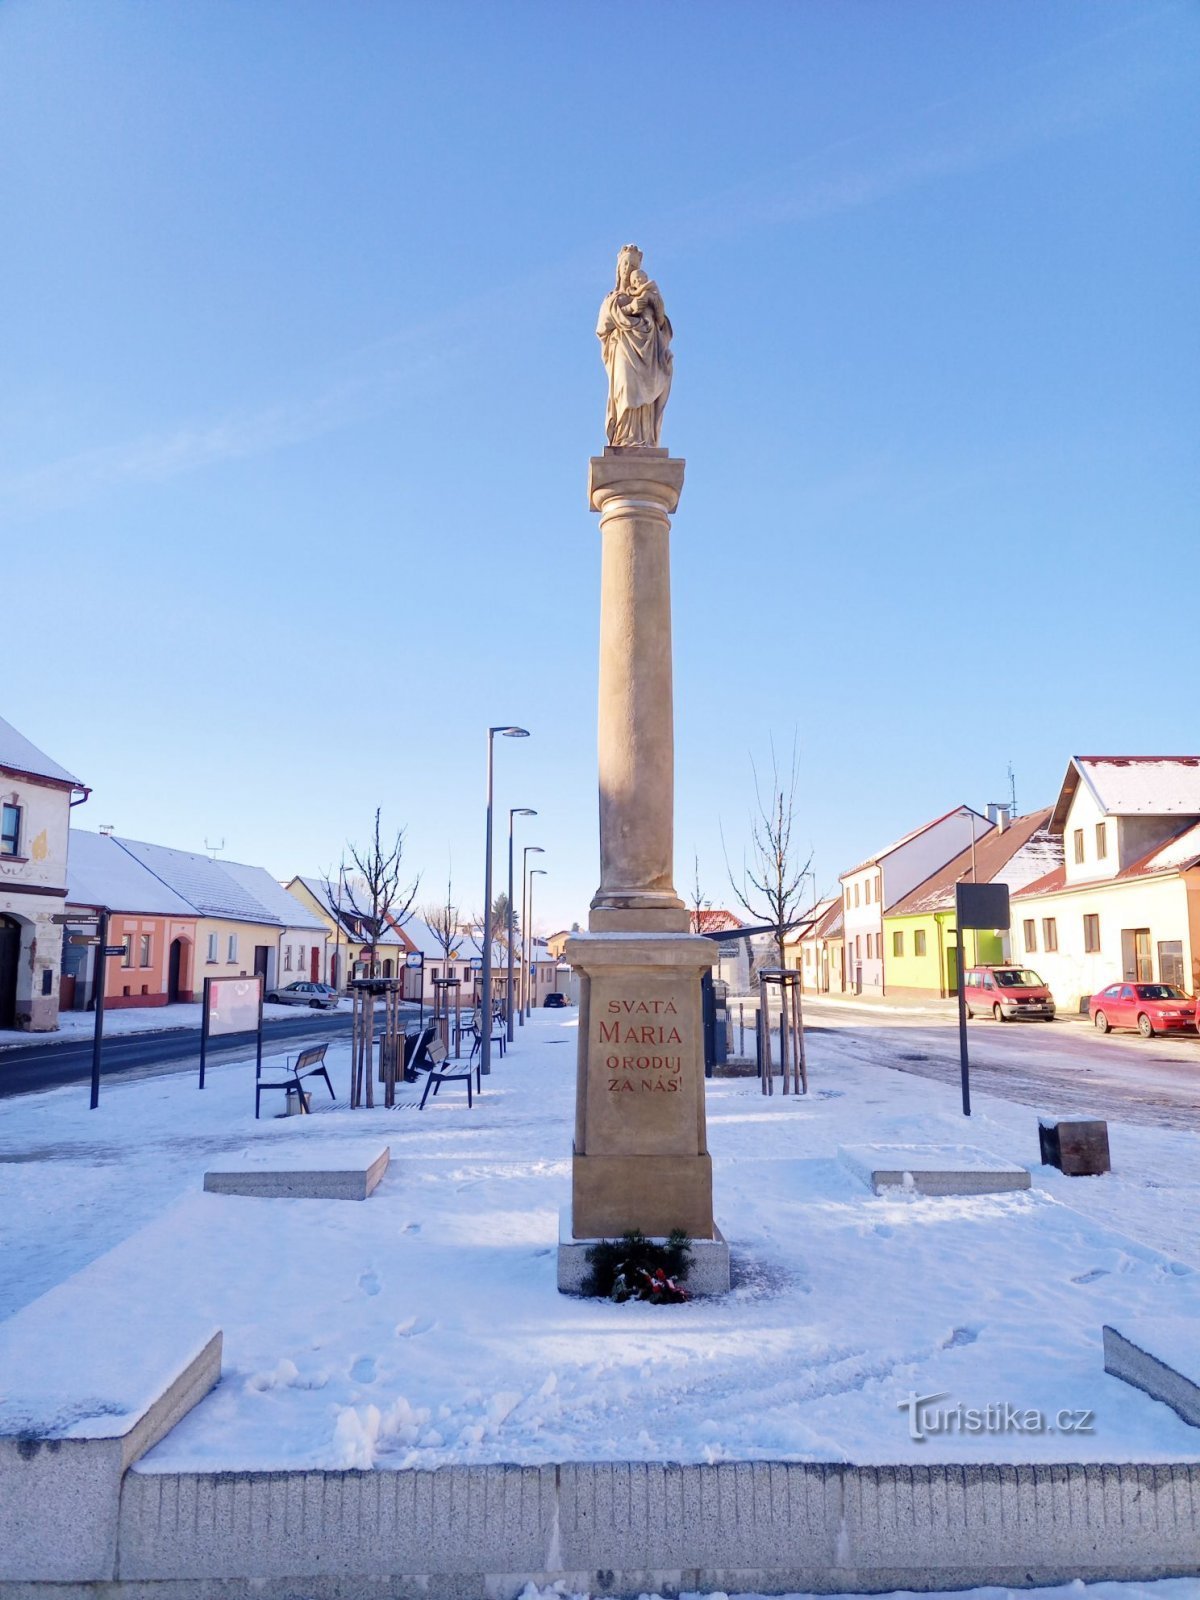 1. En toskansk kolonn i Černovice som reser sig från en prismatisk sockel bär en staty av Pa